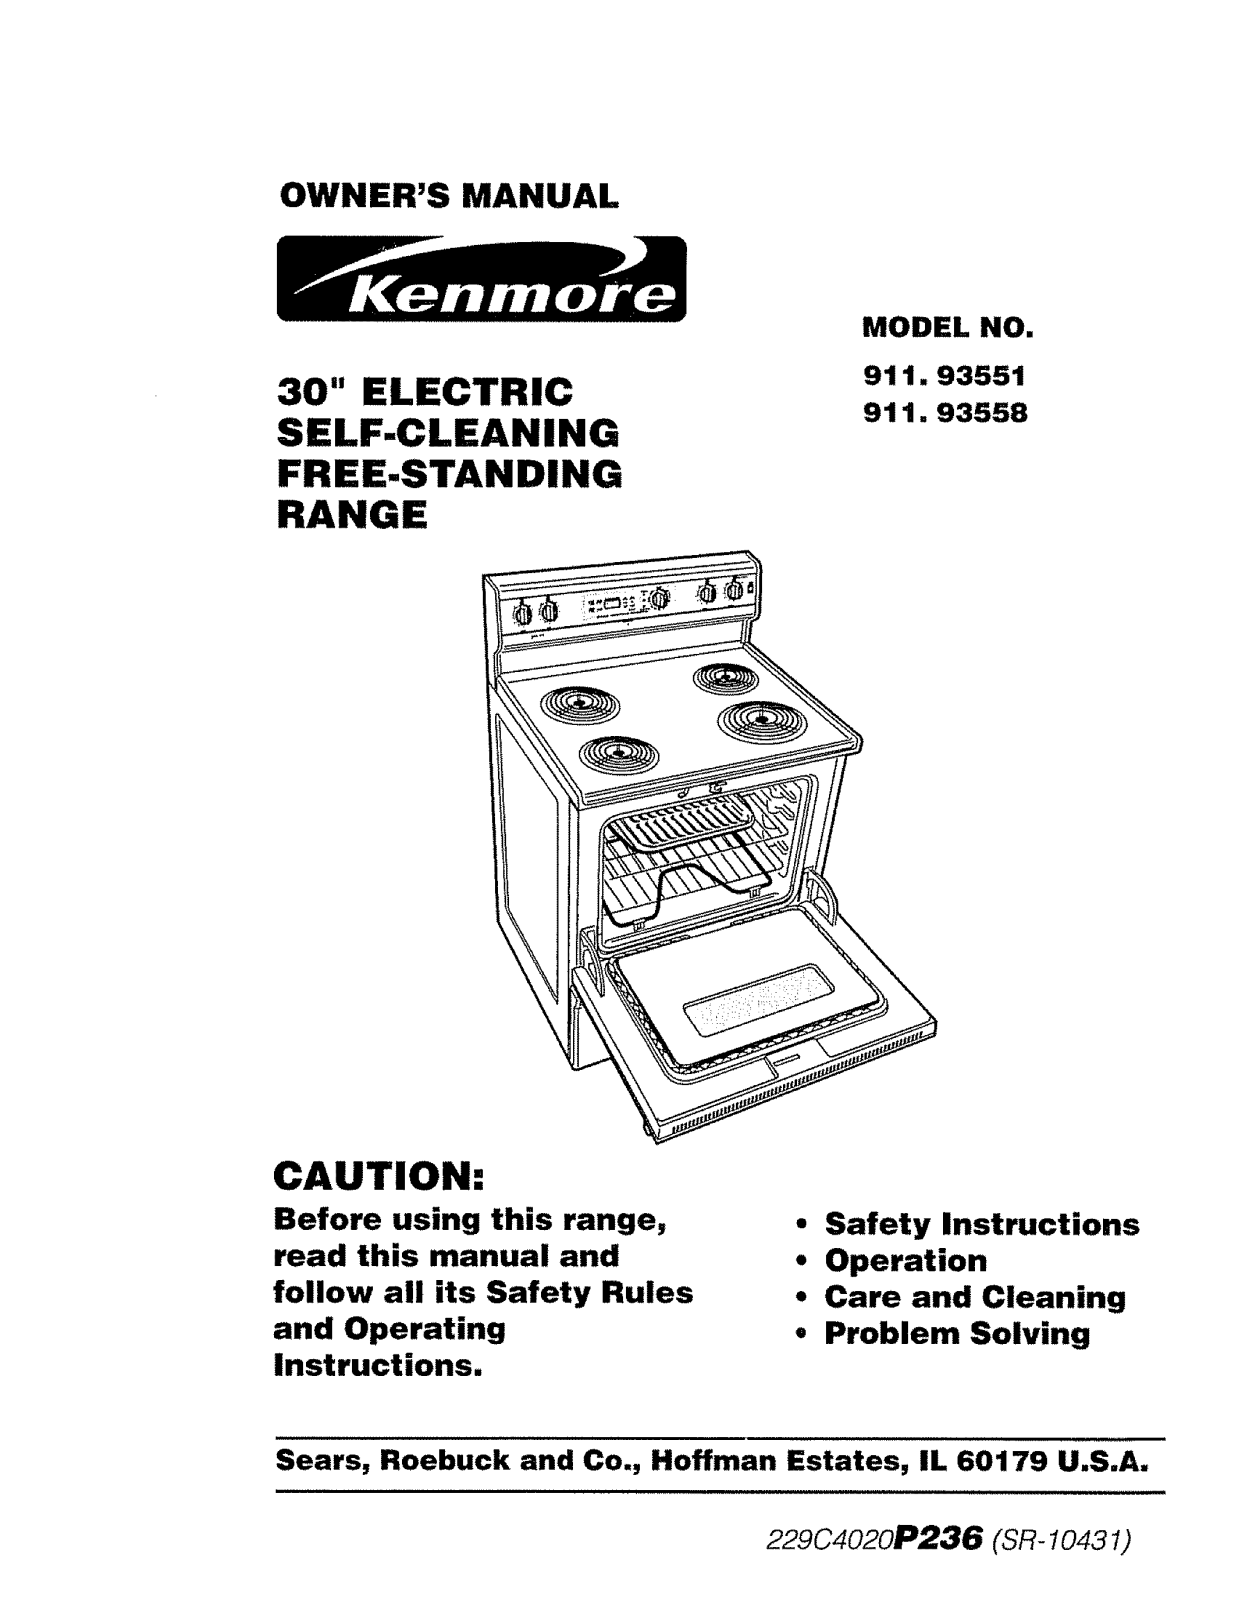 Kenmore 91193551990, 91193551991, 91193558990, 91193558991 Owner’s Manual